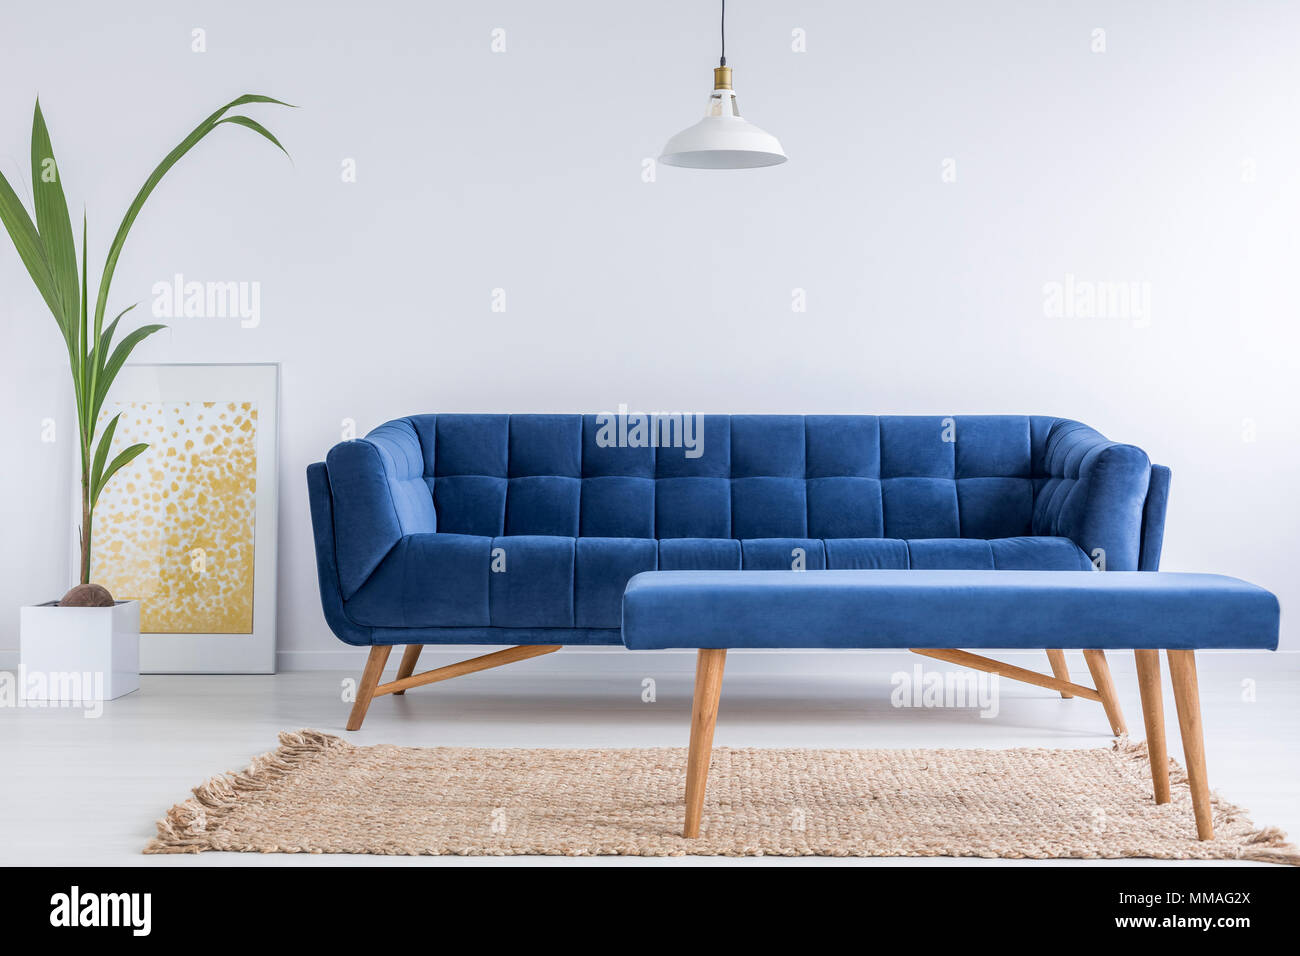 Appartement blanc avec canapé bleu, banc, tapis et plante verte Banque D'Images